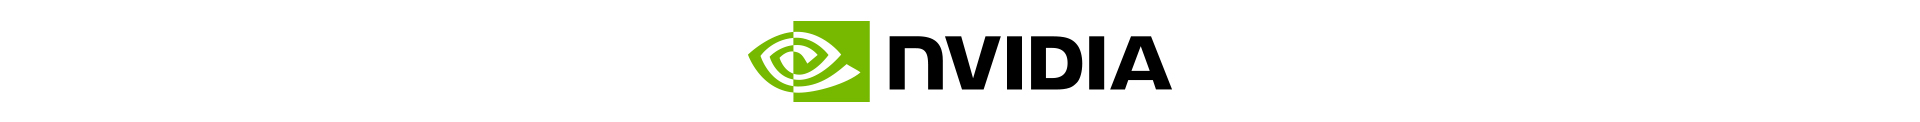 Nvidia Store Page 03.09.nivdia Logo